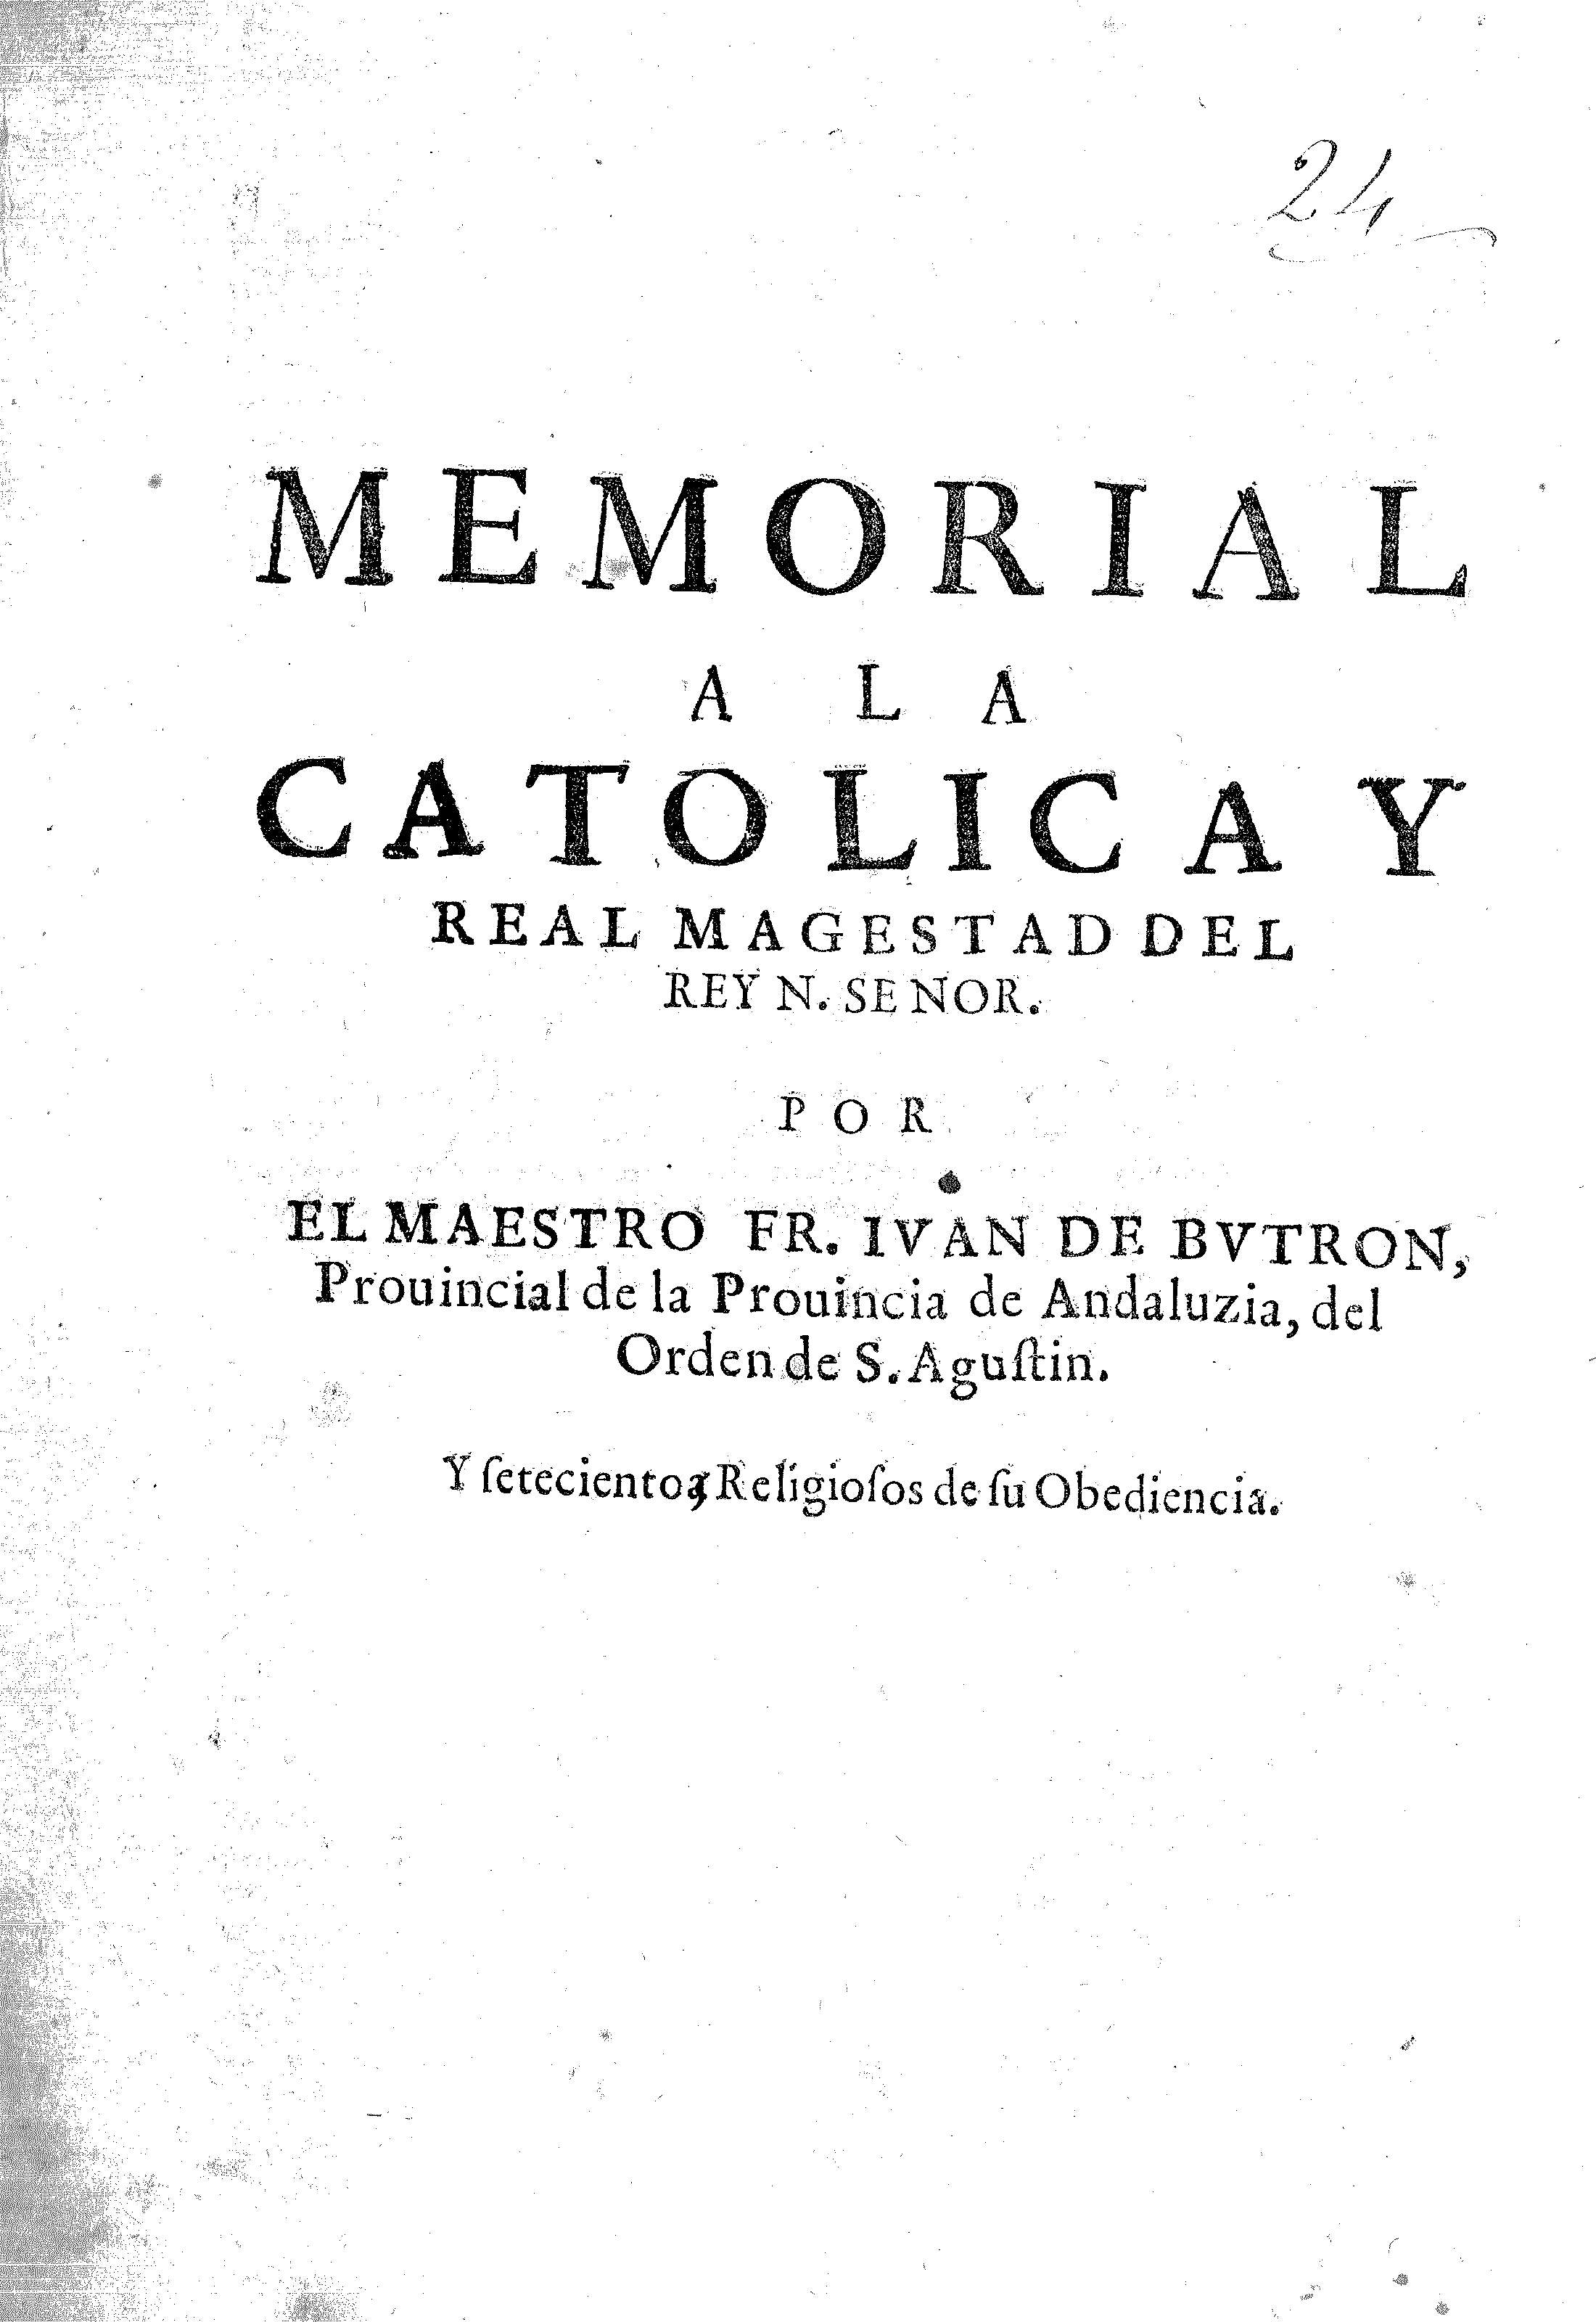 Memorial a la catolica y Real Magestad del Rey N. Senor. Por el Maestro Fr. Ivan de Butron Provincial de la Provincia de Andaluzia, del Orden de S. Agustin. 